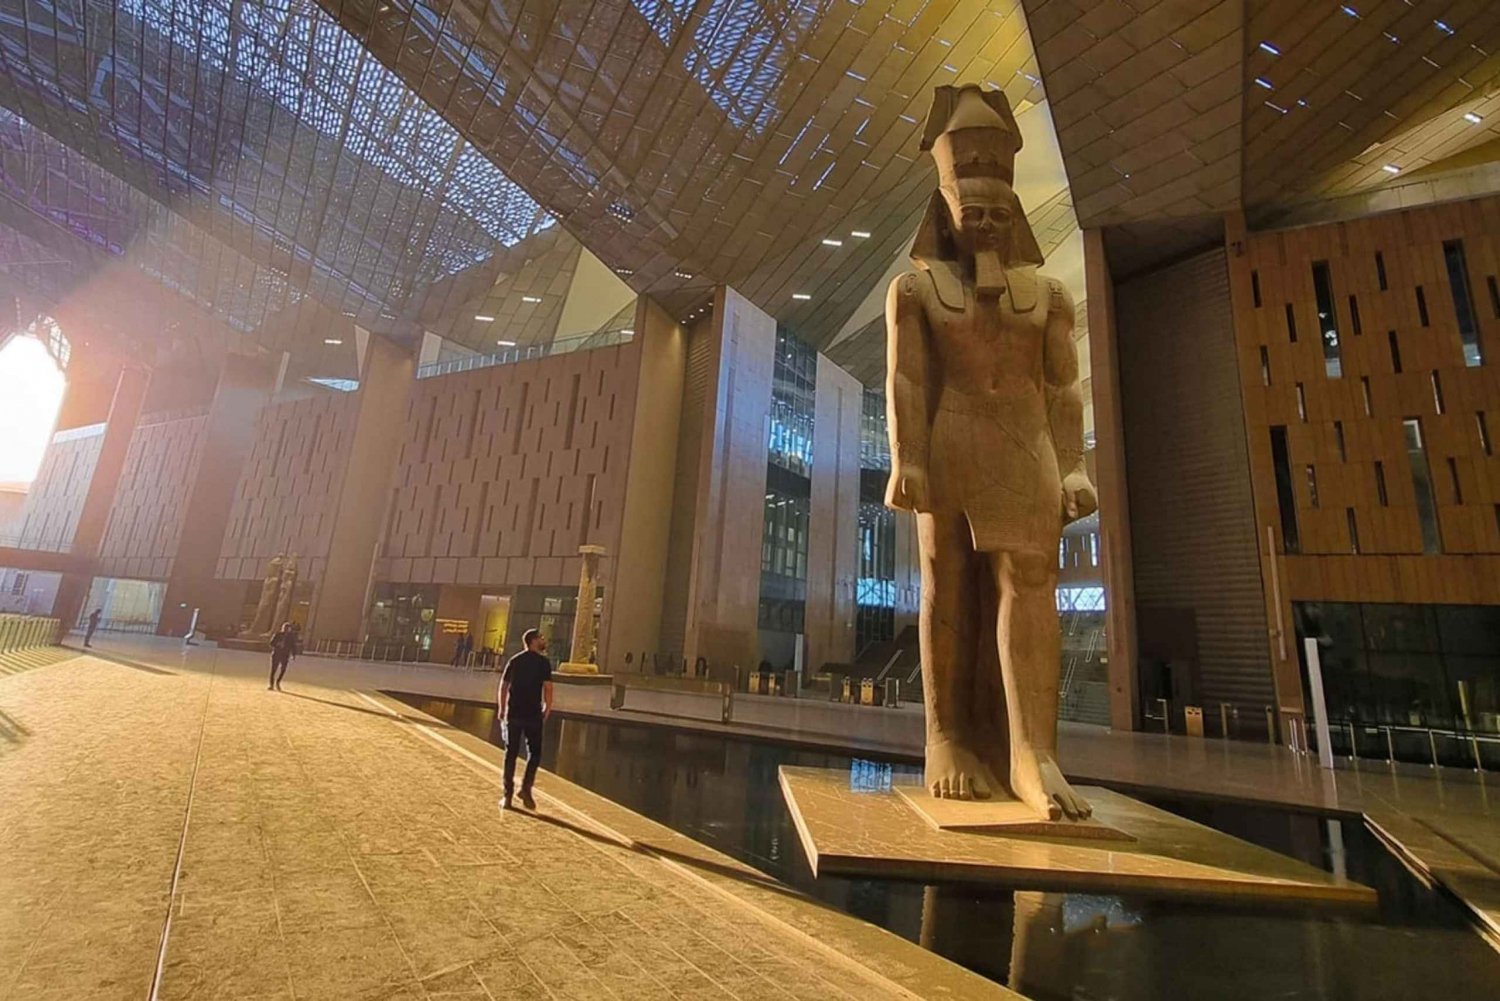 Kairo: Großes Ägyptisches Museum, Gizeh Pyramiden und Sphinx Tour